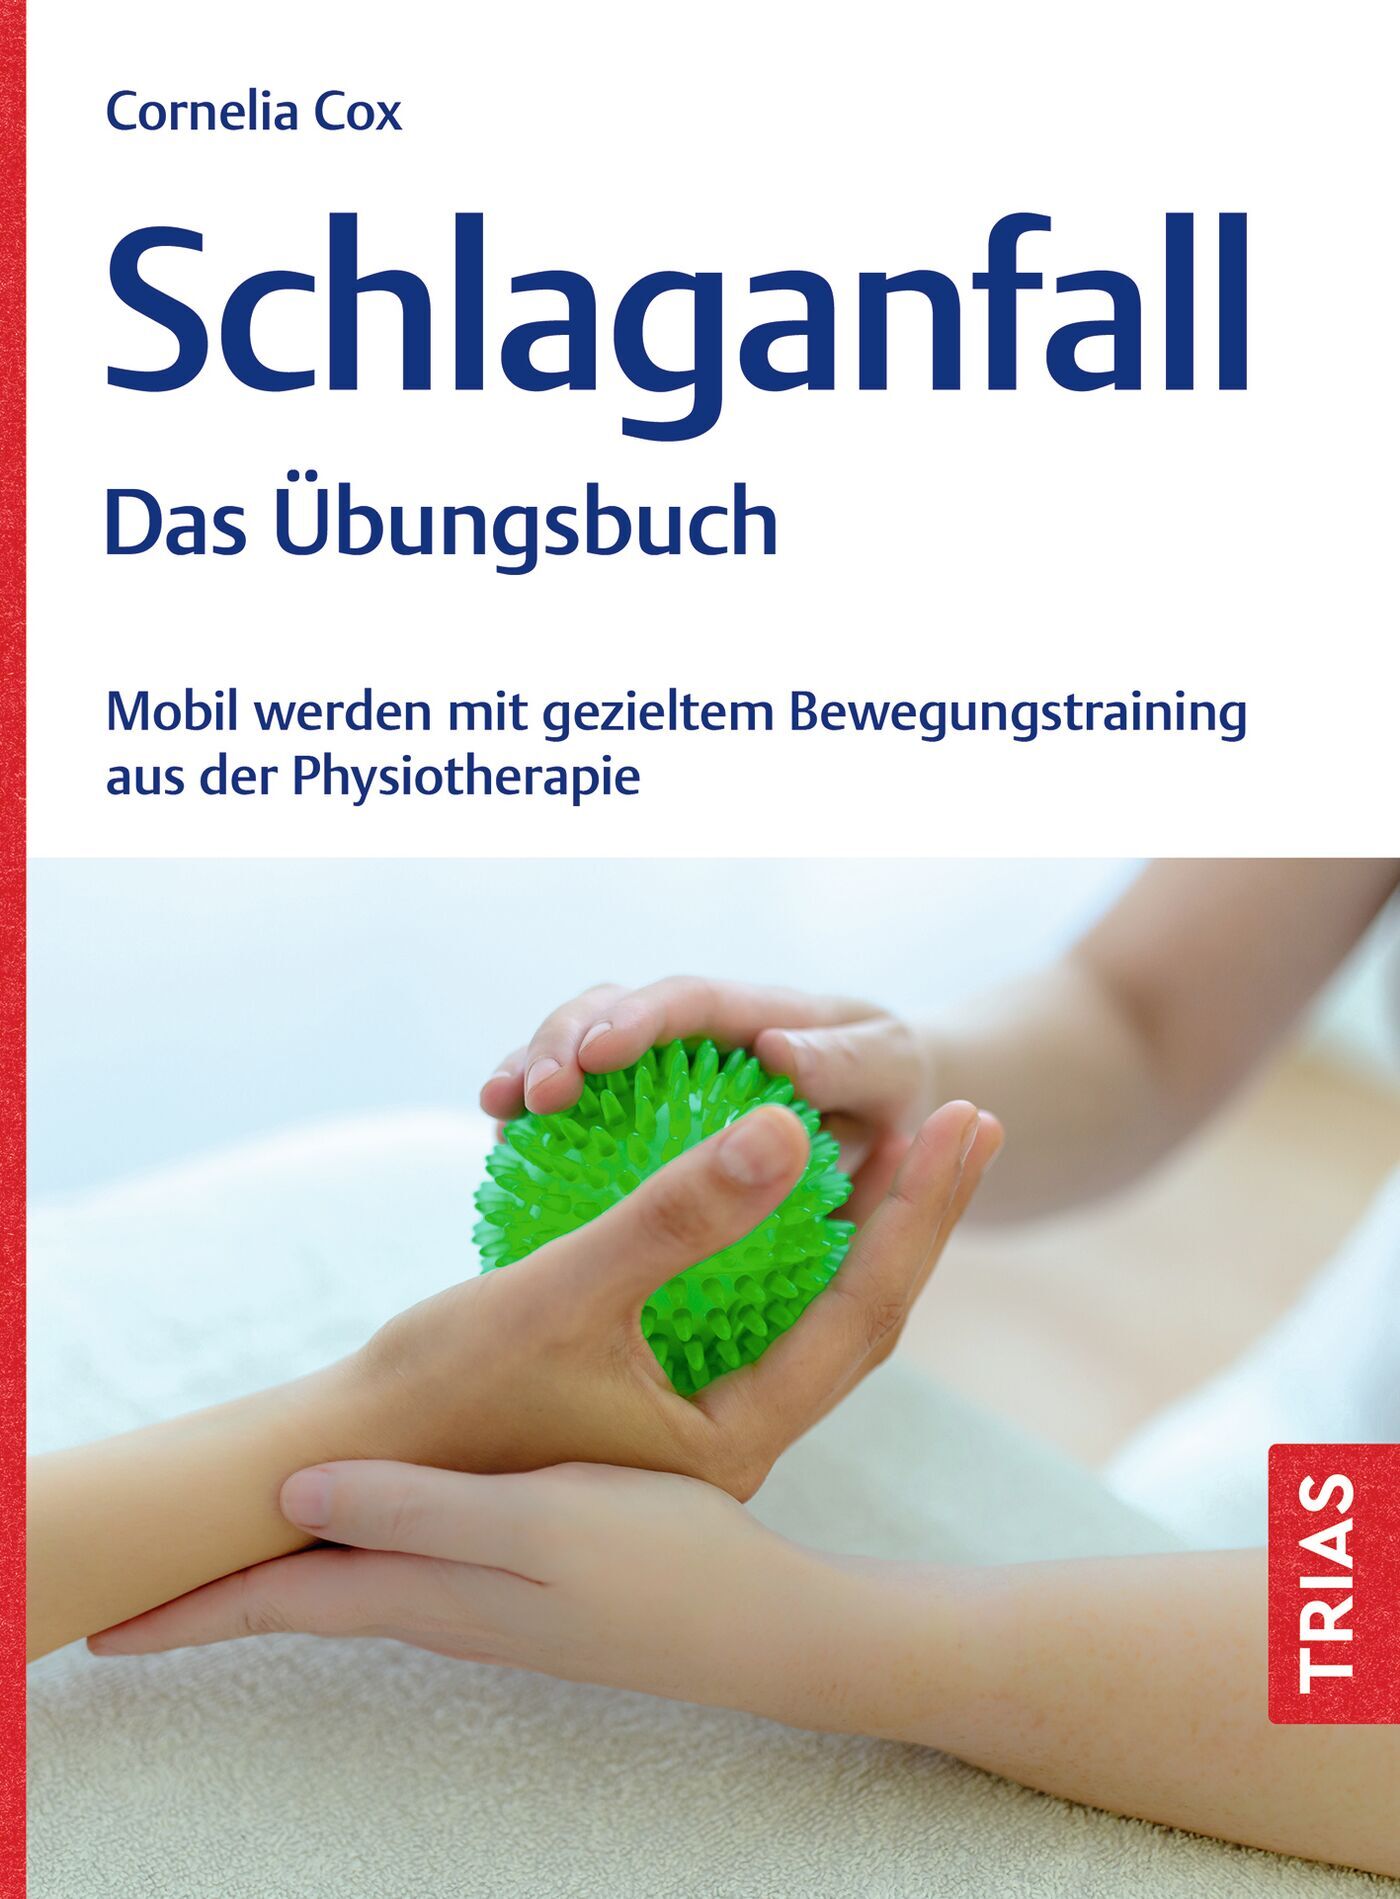 Schlaganfall - Das Übungsbuch, 9783432118208